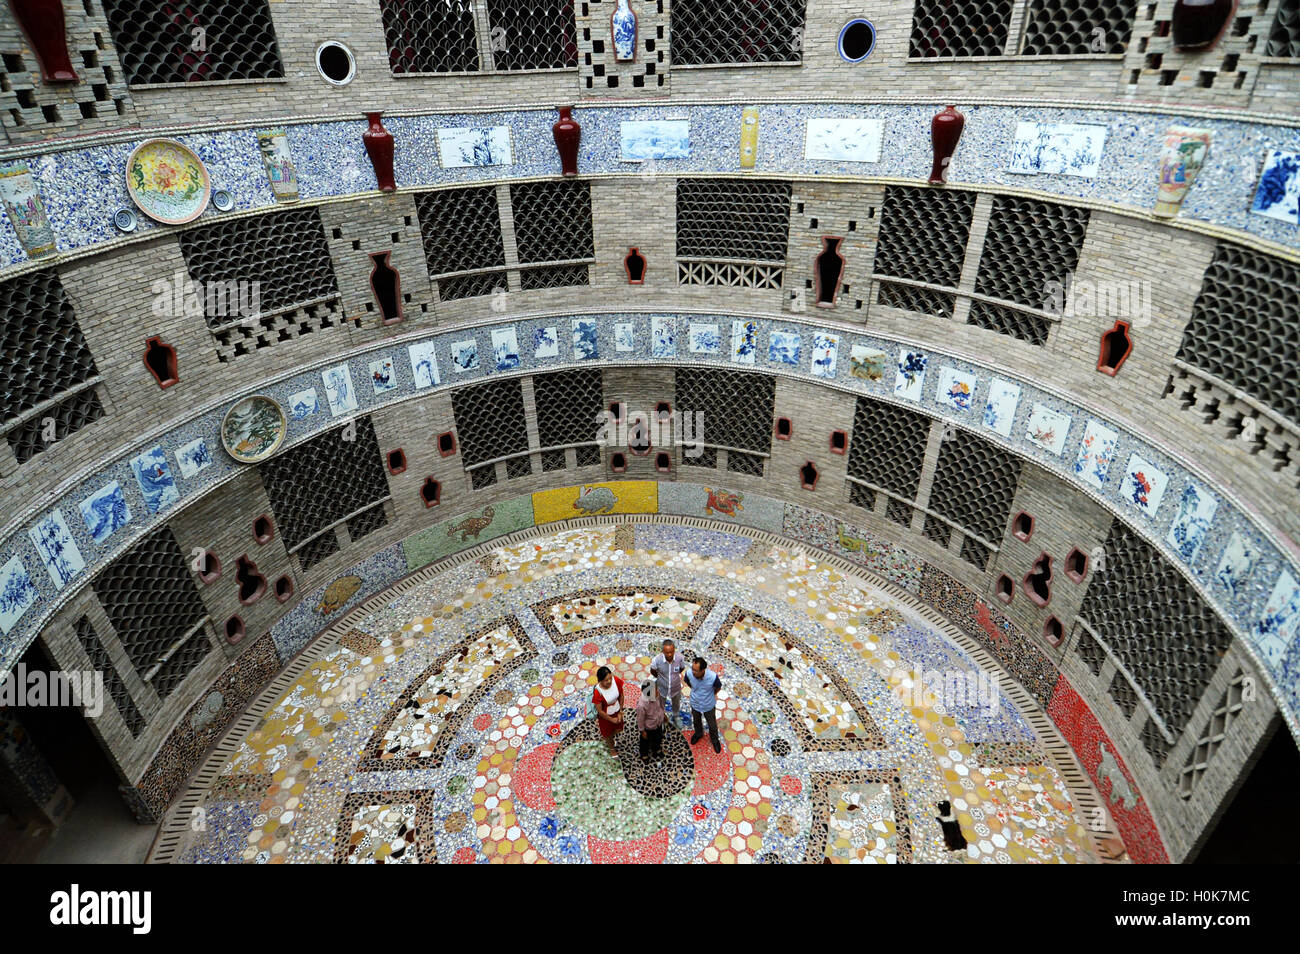 Nanchang, province de Jiangxi en Chine. Sep 21, 2016. Yu Ermei présente son palais de porcelaine aux touristes dans le village de Xinping Comté Fuliang Jingdezhen, dans la province de l'est de la Chine, 21 septembre 2016. Le 86-year-old villager Yu Ermei a passé cinq ans à construire ce palais de porcelaine. L'édifice circulaire de trois étages est décoré avec plus de 60 000 pièces de porcelaine. © Xiang Wan/Xinhua/Alamy Live News Banque D'Images